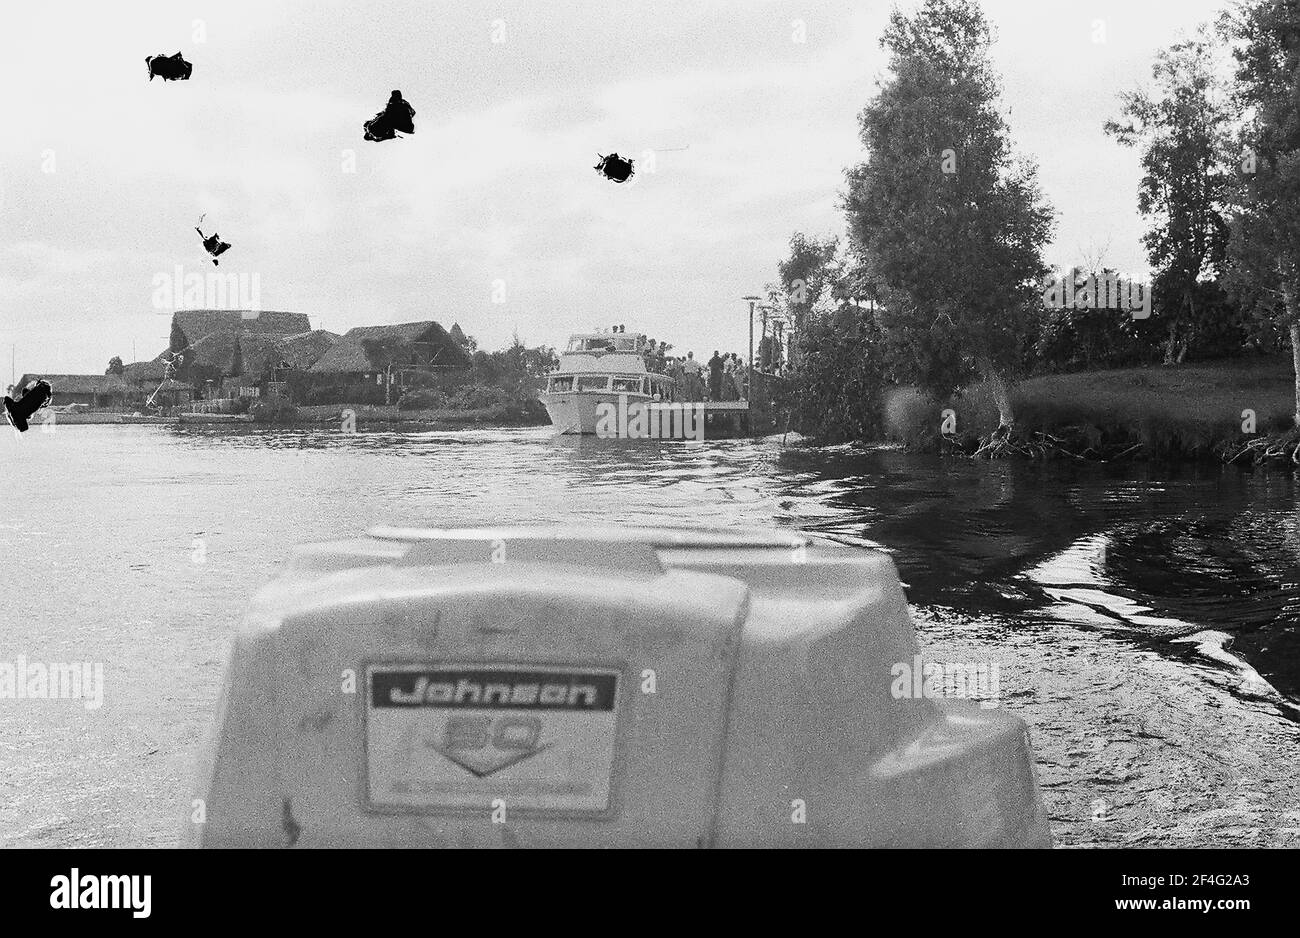 Resort costruito su palude drenata vicino a Bay of Pigs, Cuba, provincia di Matanzas, Playa Giron, vista sul motore fuoribordo sul retro di una piccola barca, 1963. Dalla collezione di fotografie Deena Stryker. () Foto Stock